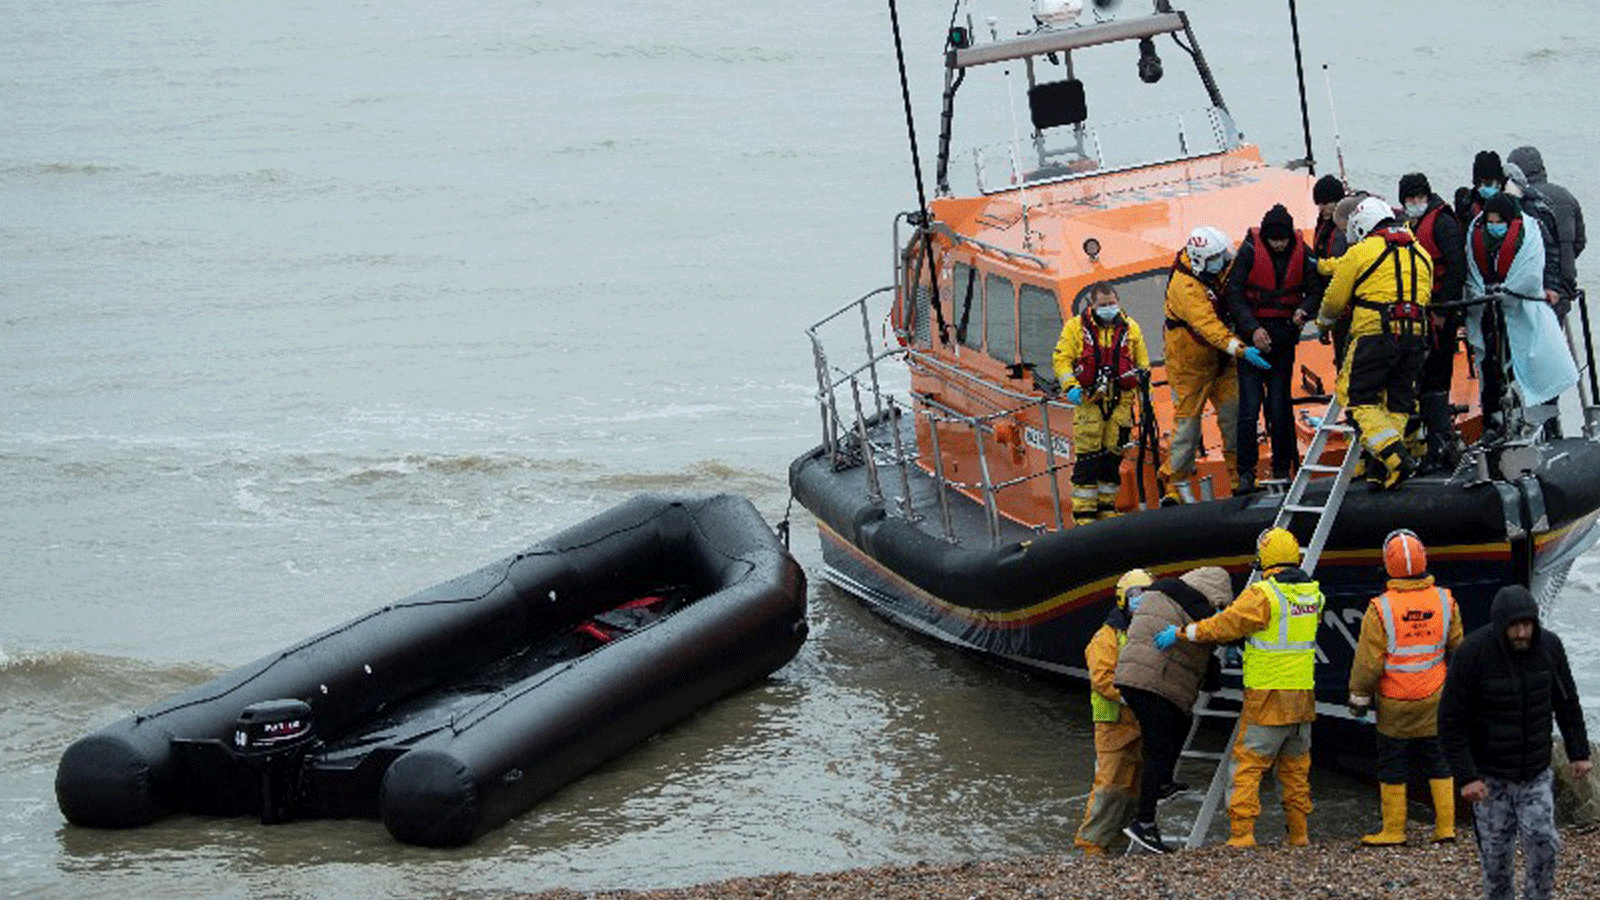 عملية إنقاذ لقارب غرق في القنال الإنجليزي، قبالة كاليه، أثناء محاولتهم الوصول إلى بريطانيا